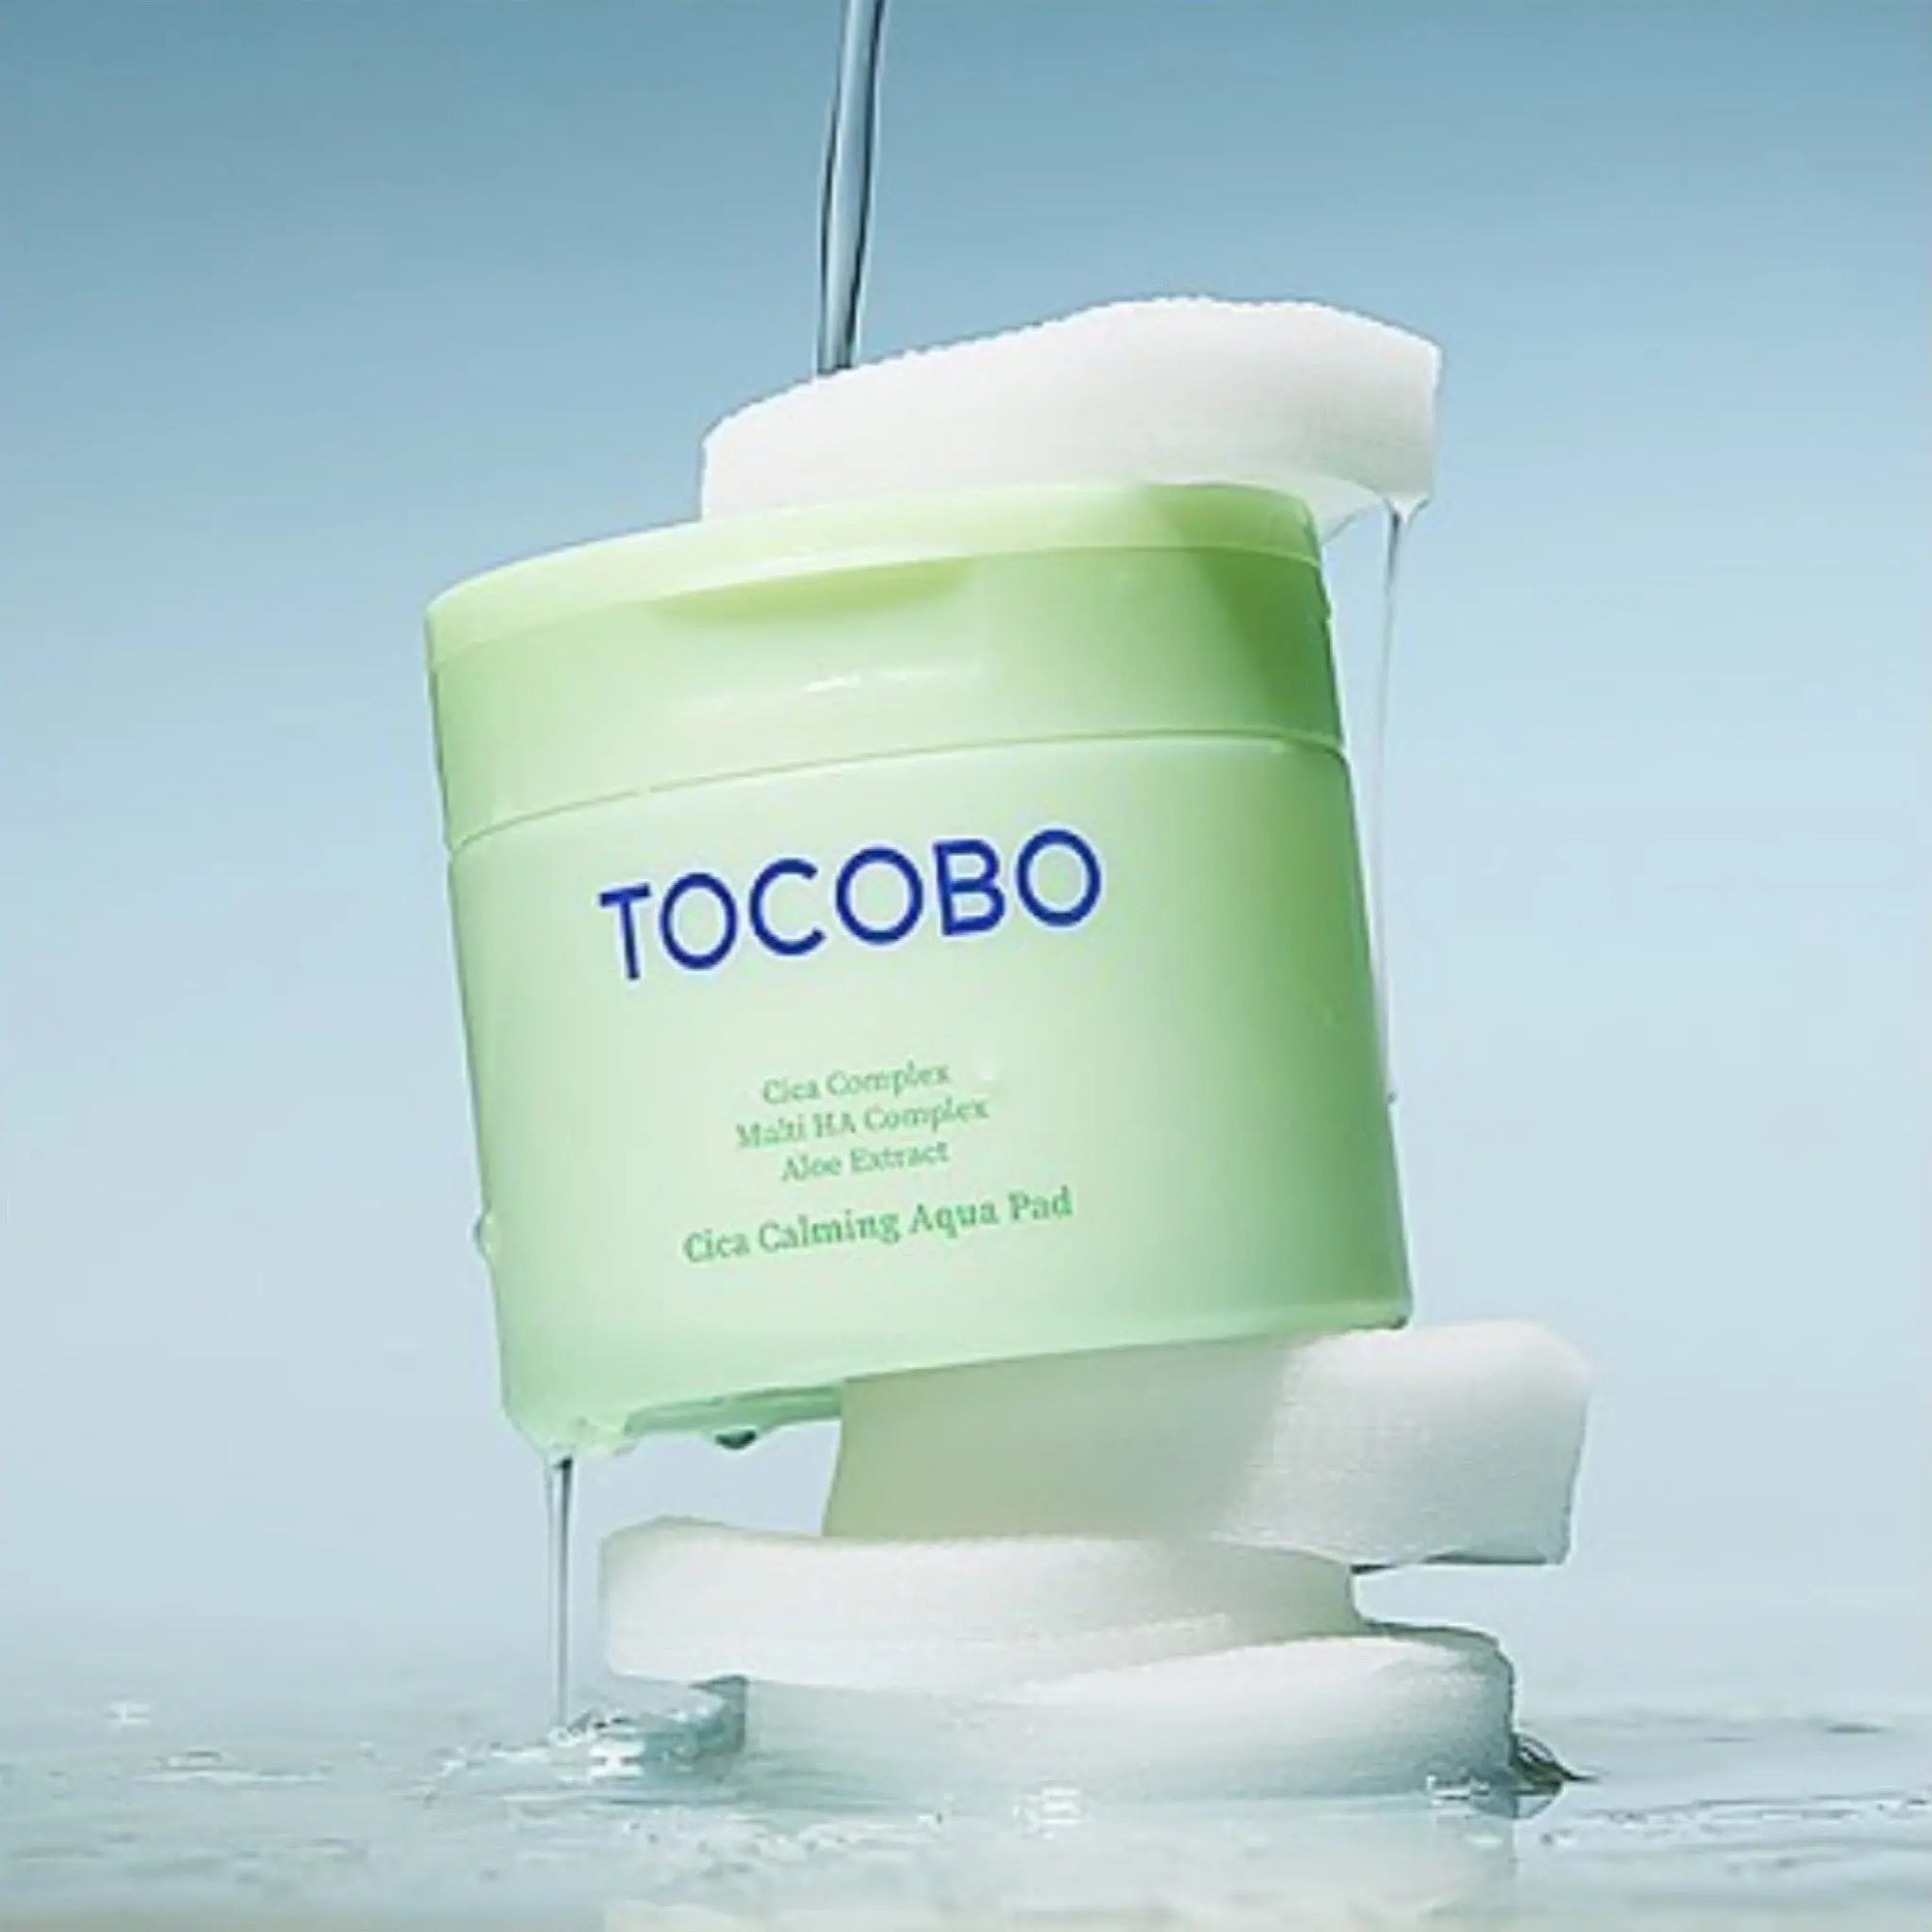 Tocobo - Cica Calming Aqua Pad (60ea) Tocobo